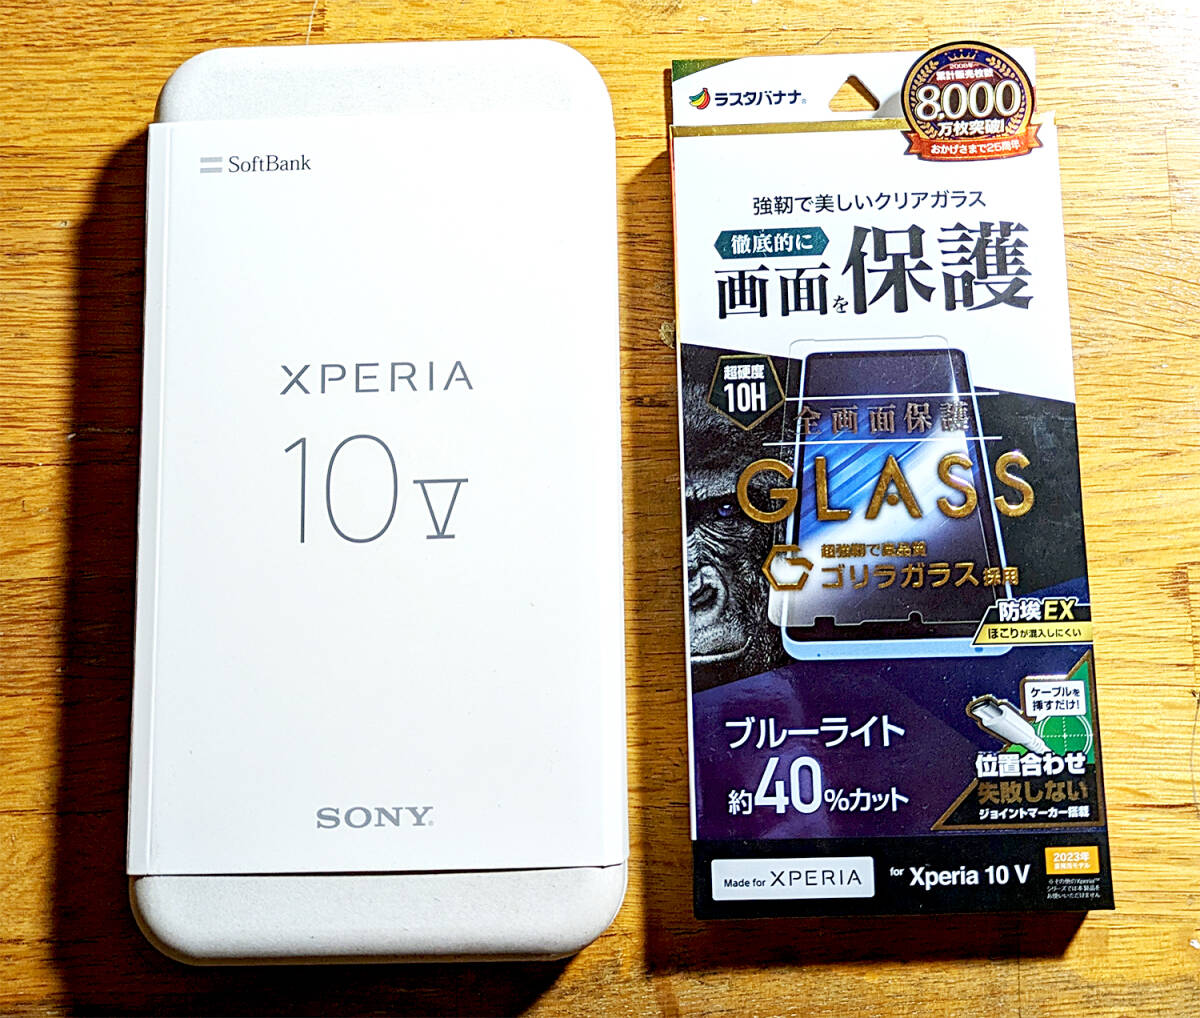  не использовался SoftBank SONY Xperiaek superior 10 V корпус лаванда суждение 0 1 иен из 